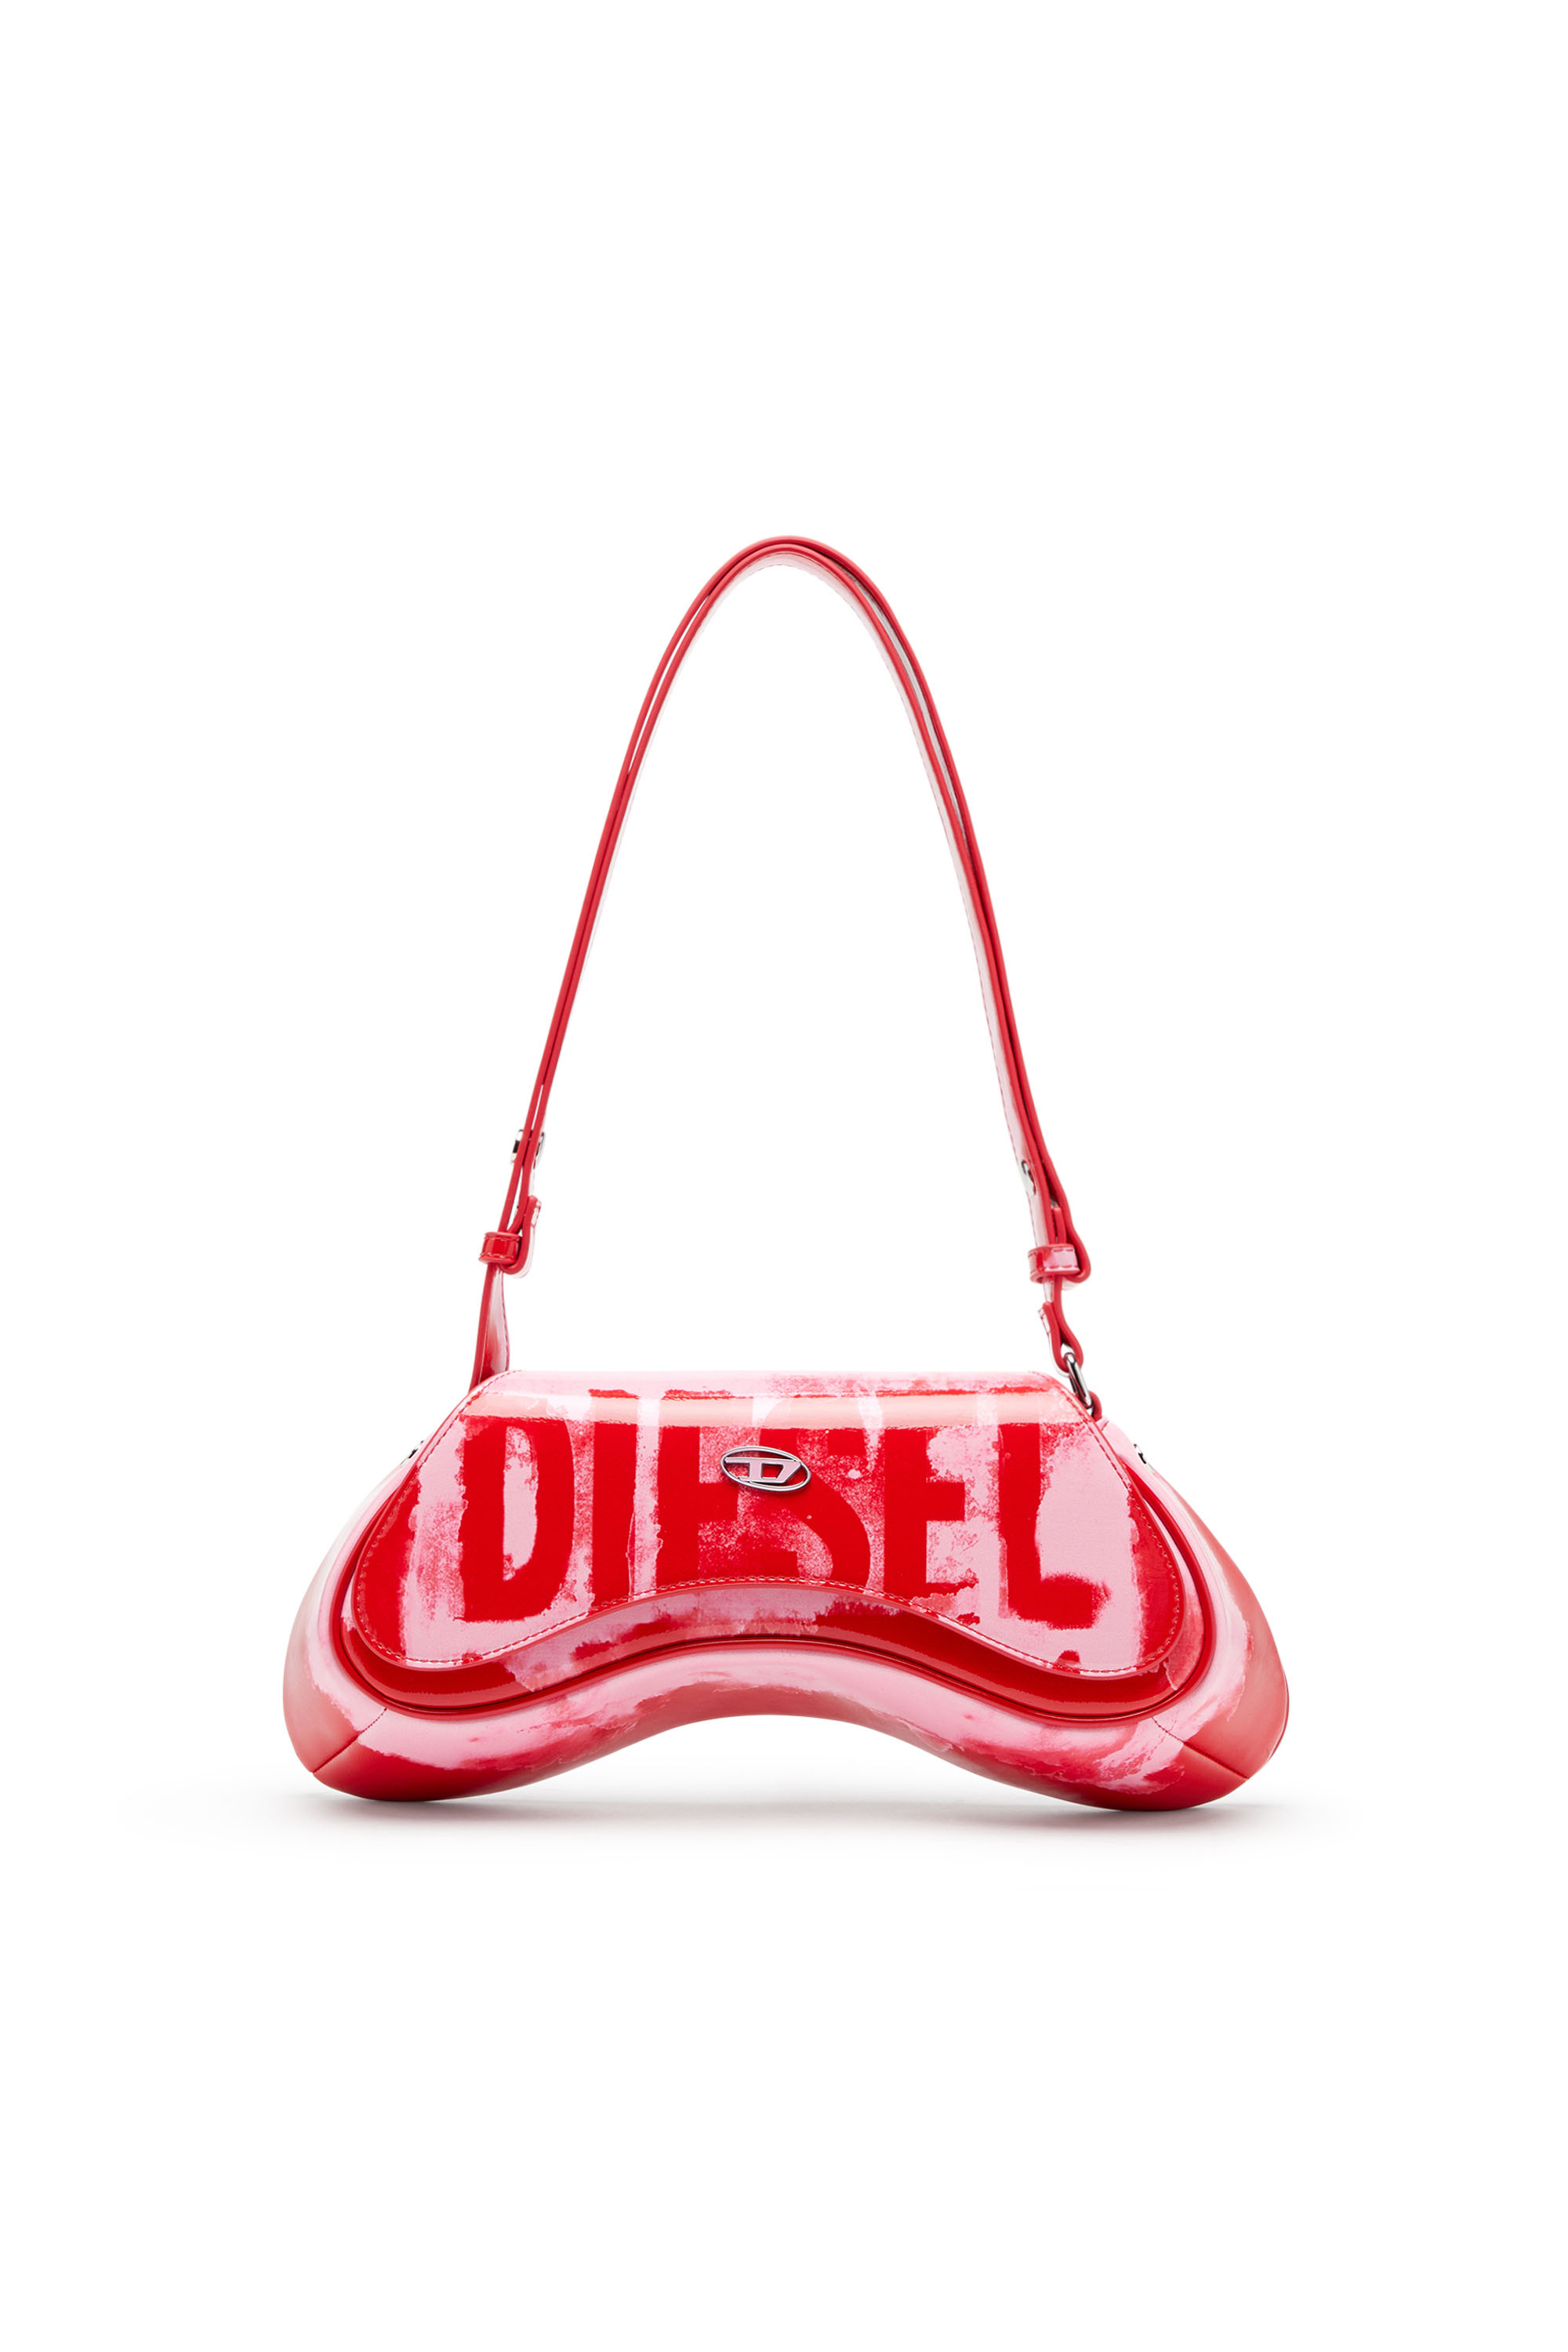 Diesel - PLAY CROSSBODY, Pink/Red - Image 2